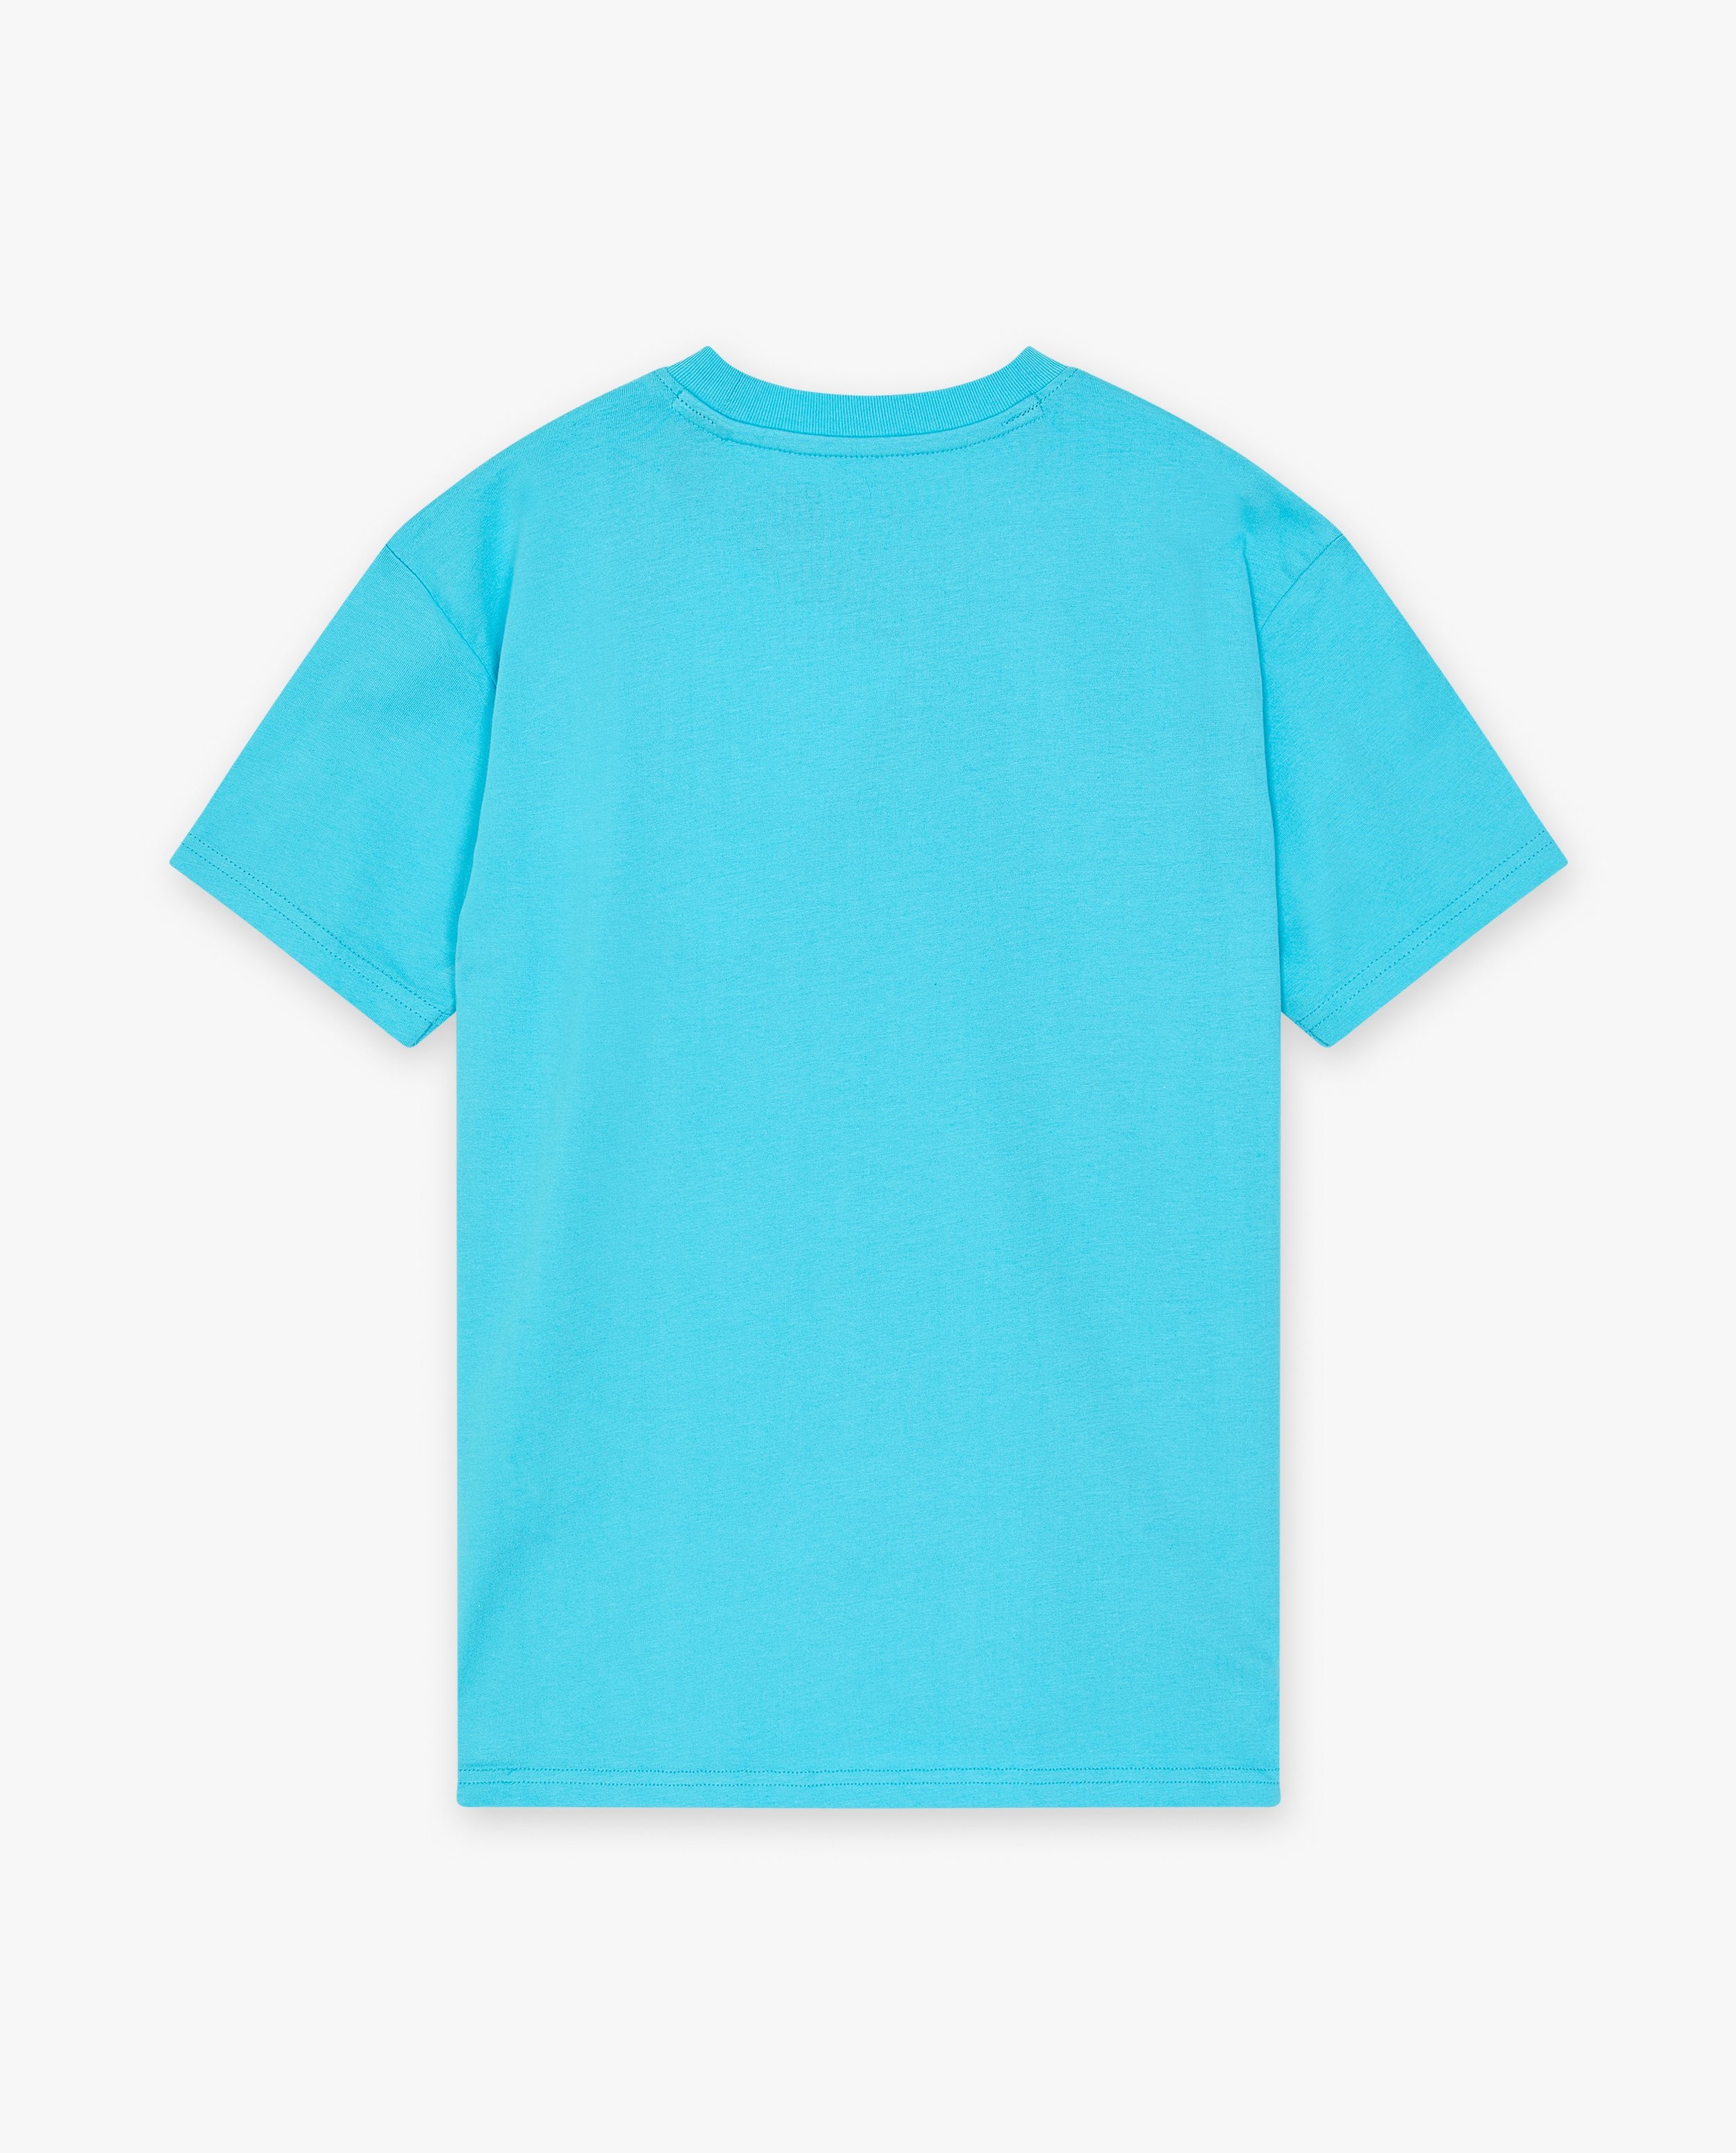 T-shirts - Blauw T-shirt met opschrift